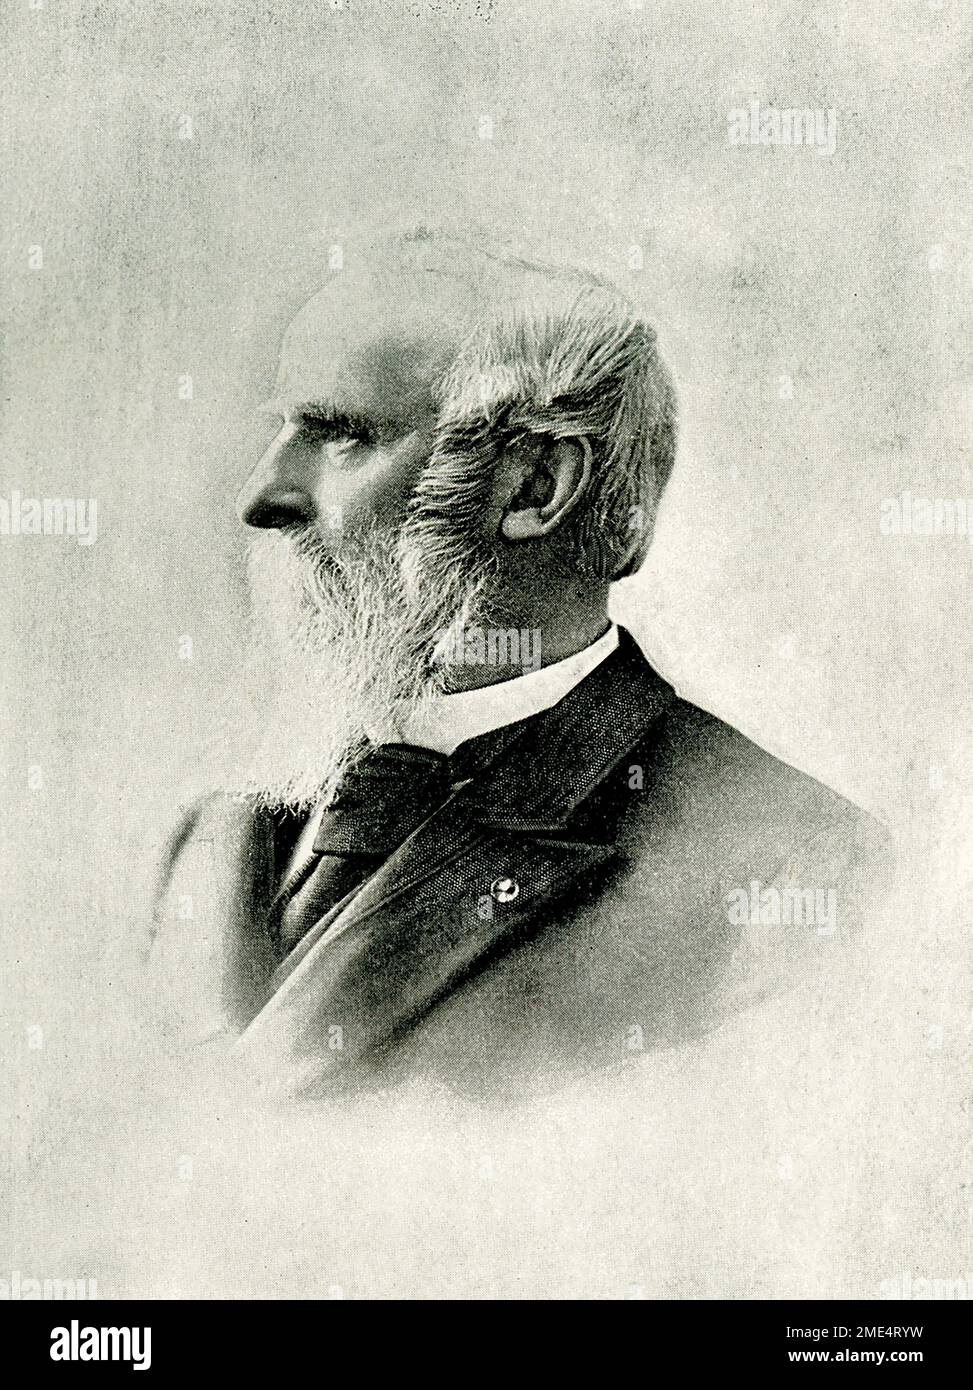 Rutherford Birchard Hayes è stato un avvocato e politico americano che ha servito come 19th presidente degli Stati Uniti dal 1877 al 1881, dopo aver prestato servizio negli Stati Uniti Camera dei rappresentanti e come governatore dell'Ohio. Foto Stock